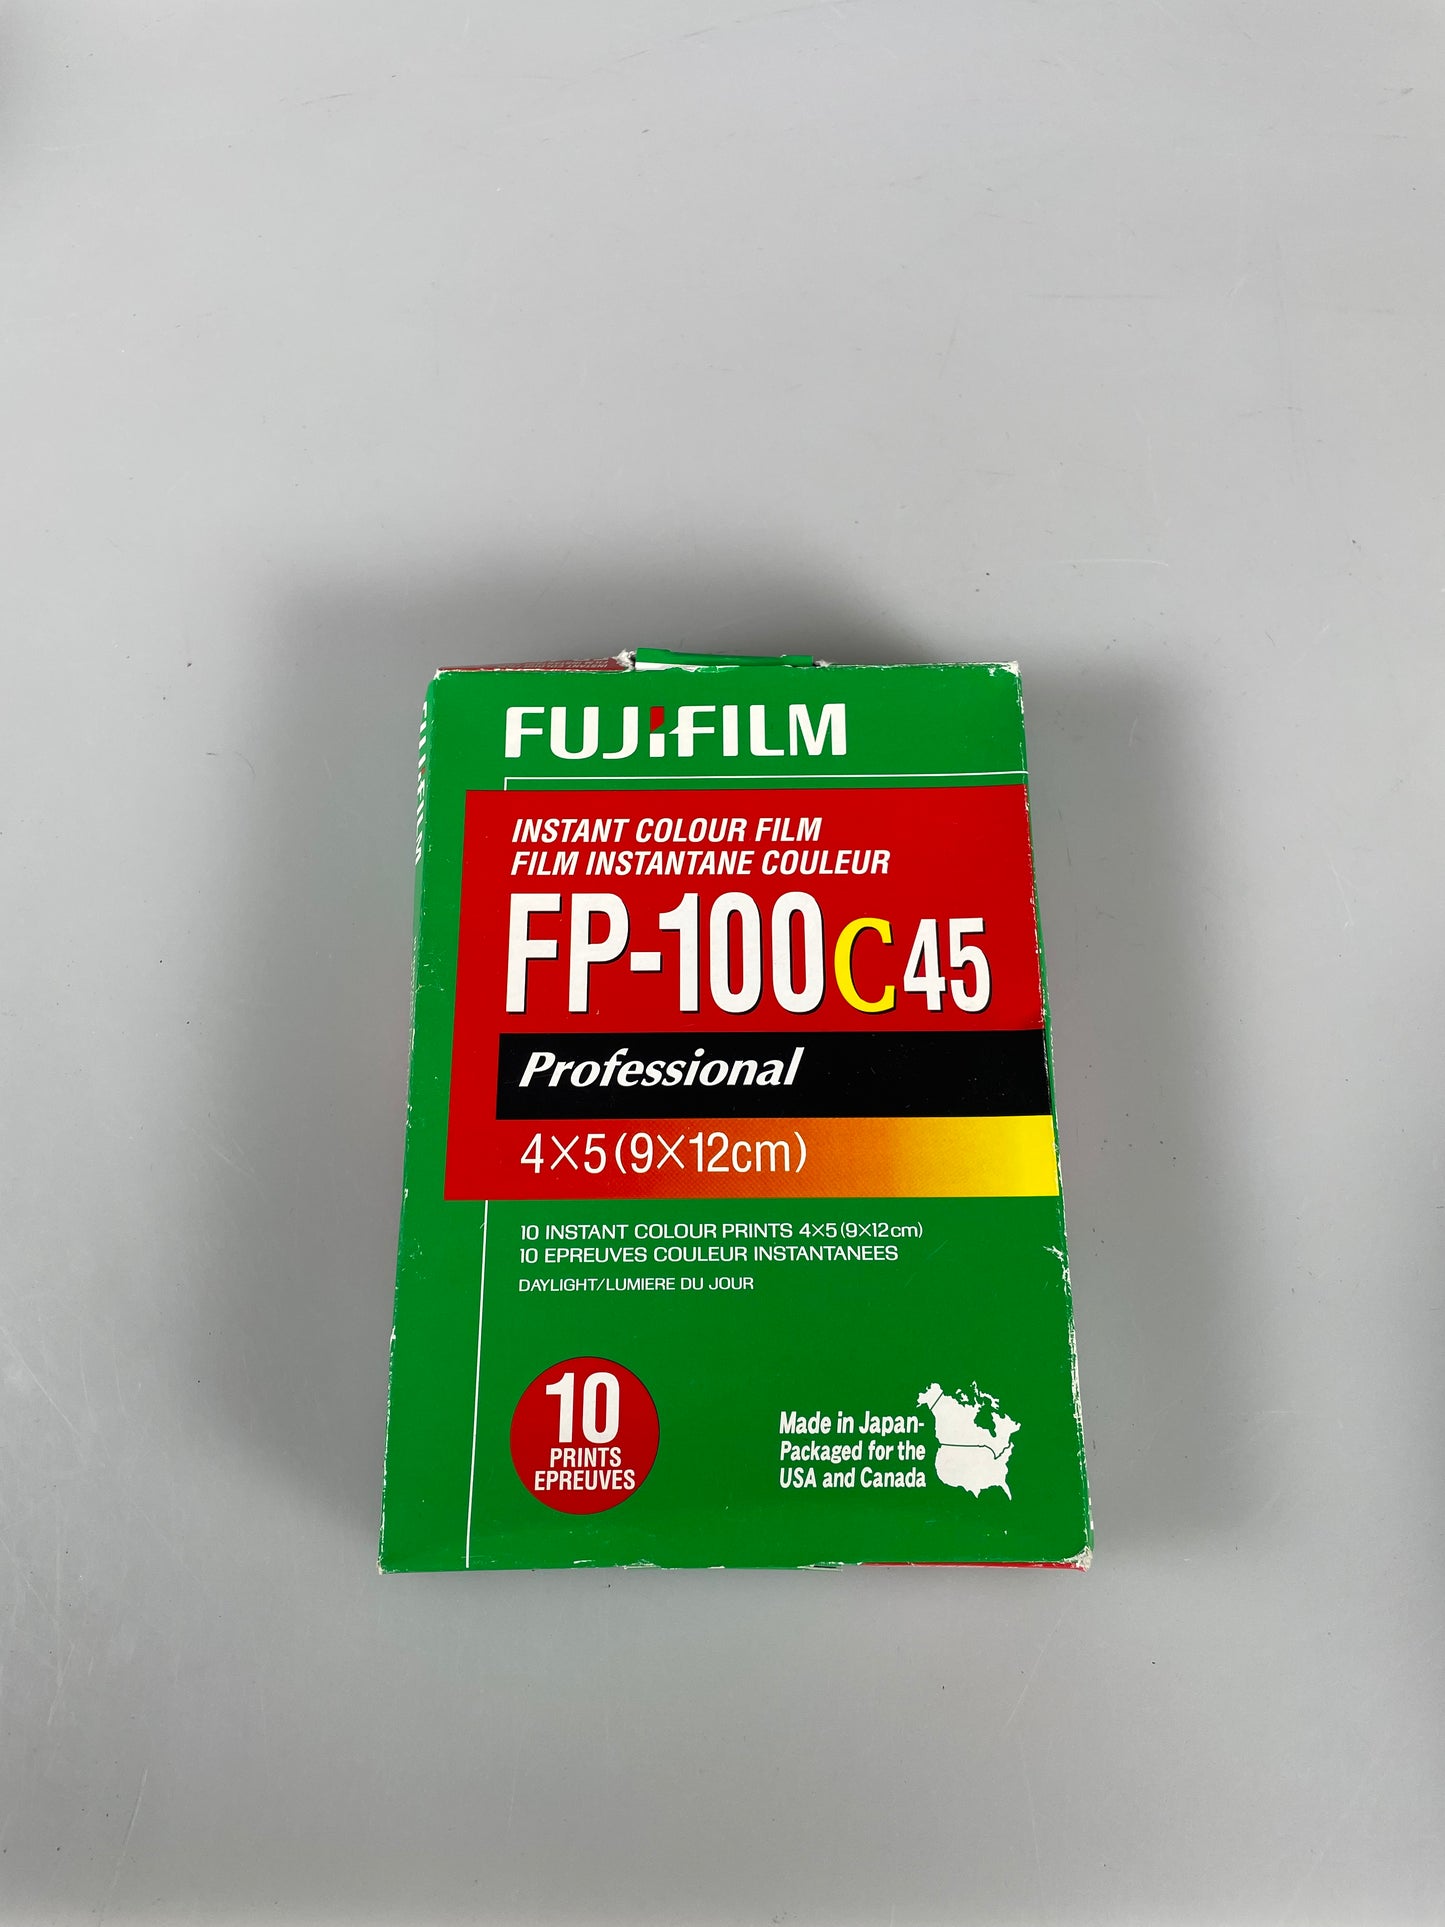 Fujifilm FP-100C 45 4x5 Color Instant Film